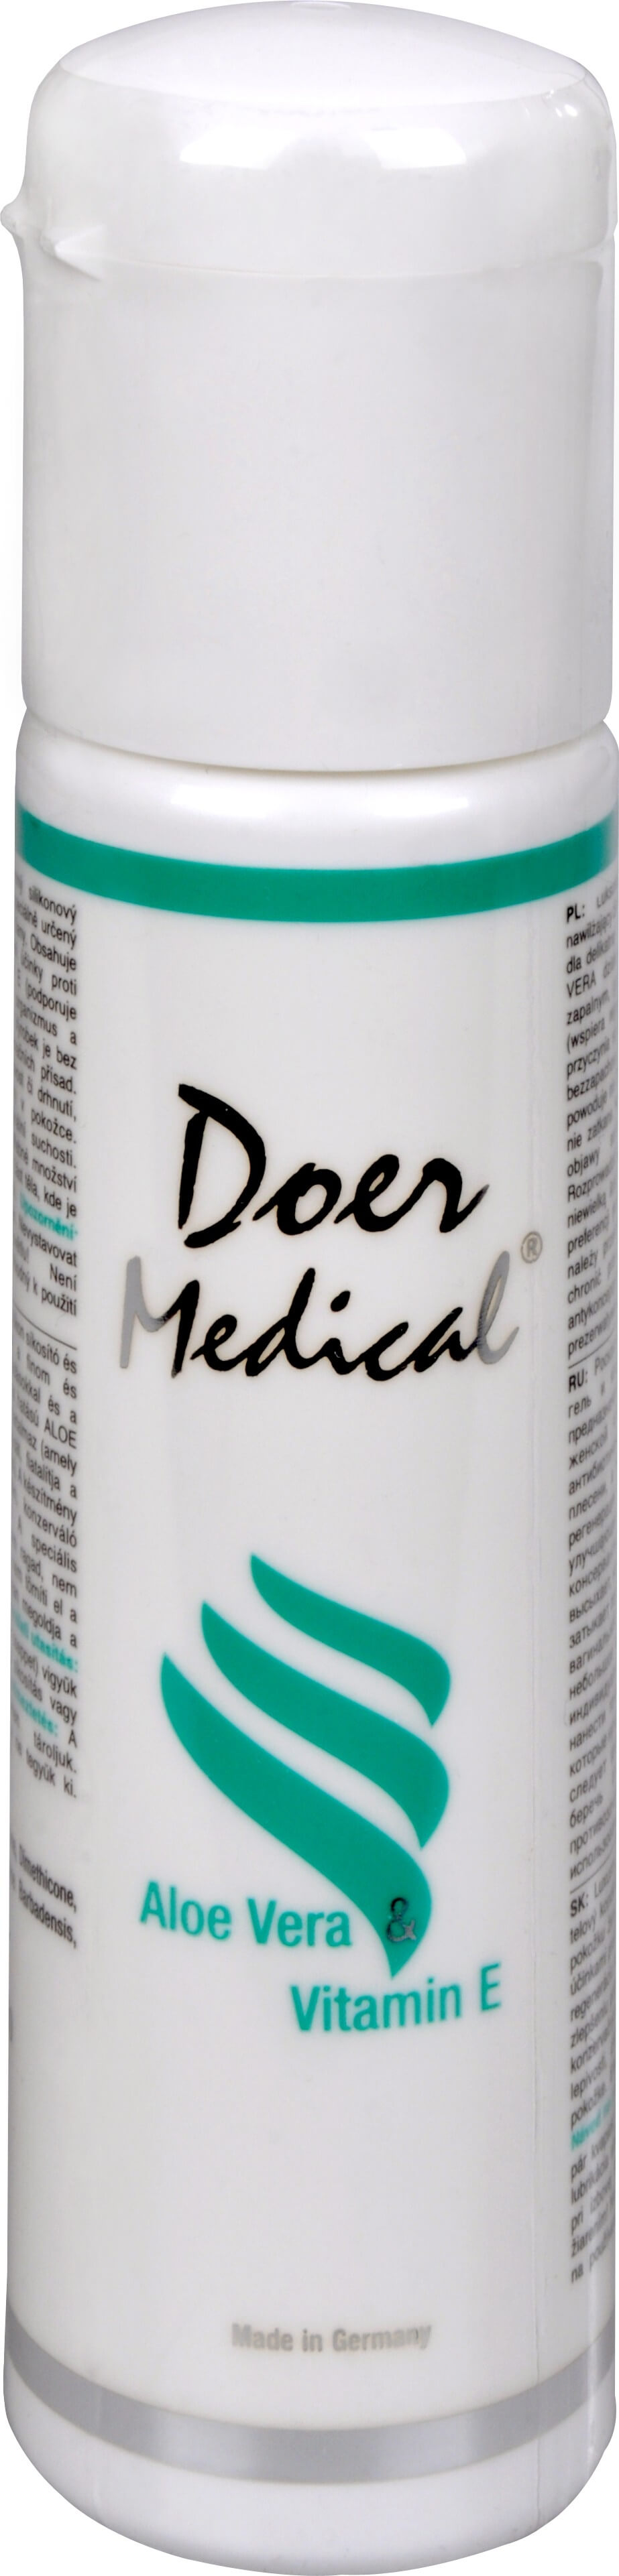 Zobrazit detail výrobku Doer Medical® Doer Medical Aloe vera & vitamín E 100 ml